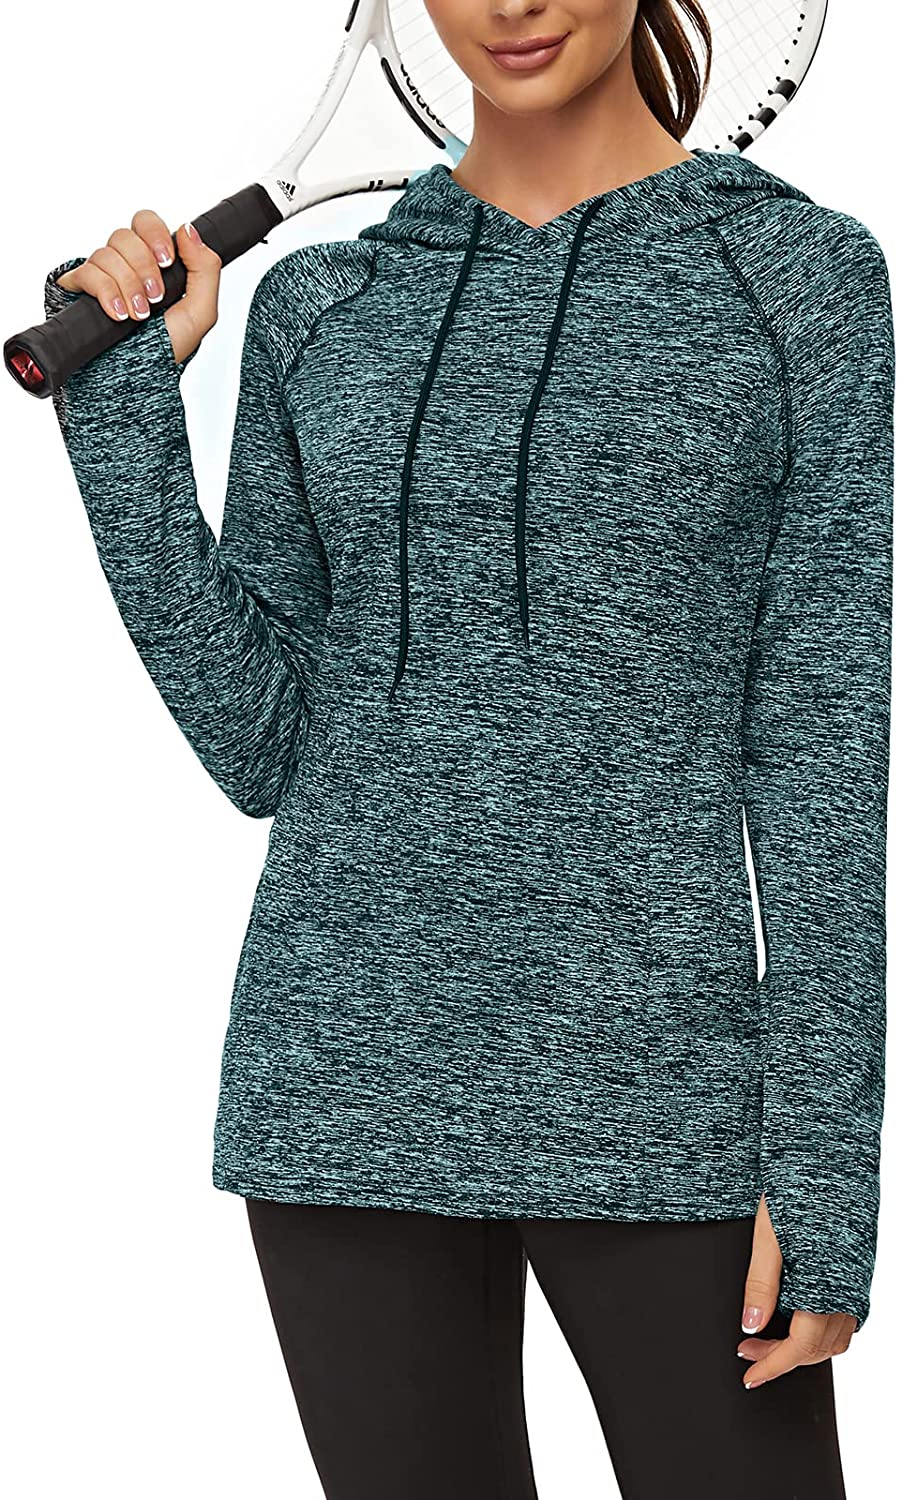 thumbnail 15  - Soneven Women Fleece Thermal Long Sleeve Running Shirt Workout Tops Moisture Wic